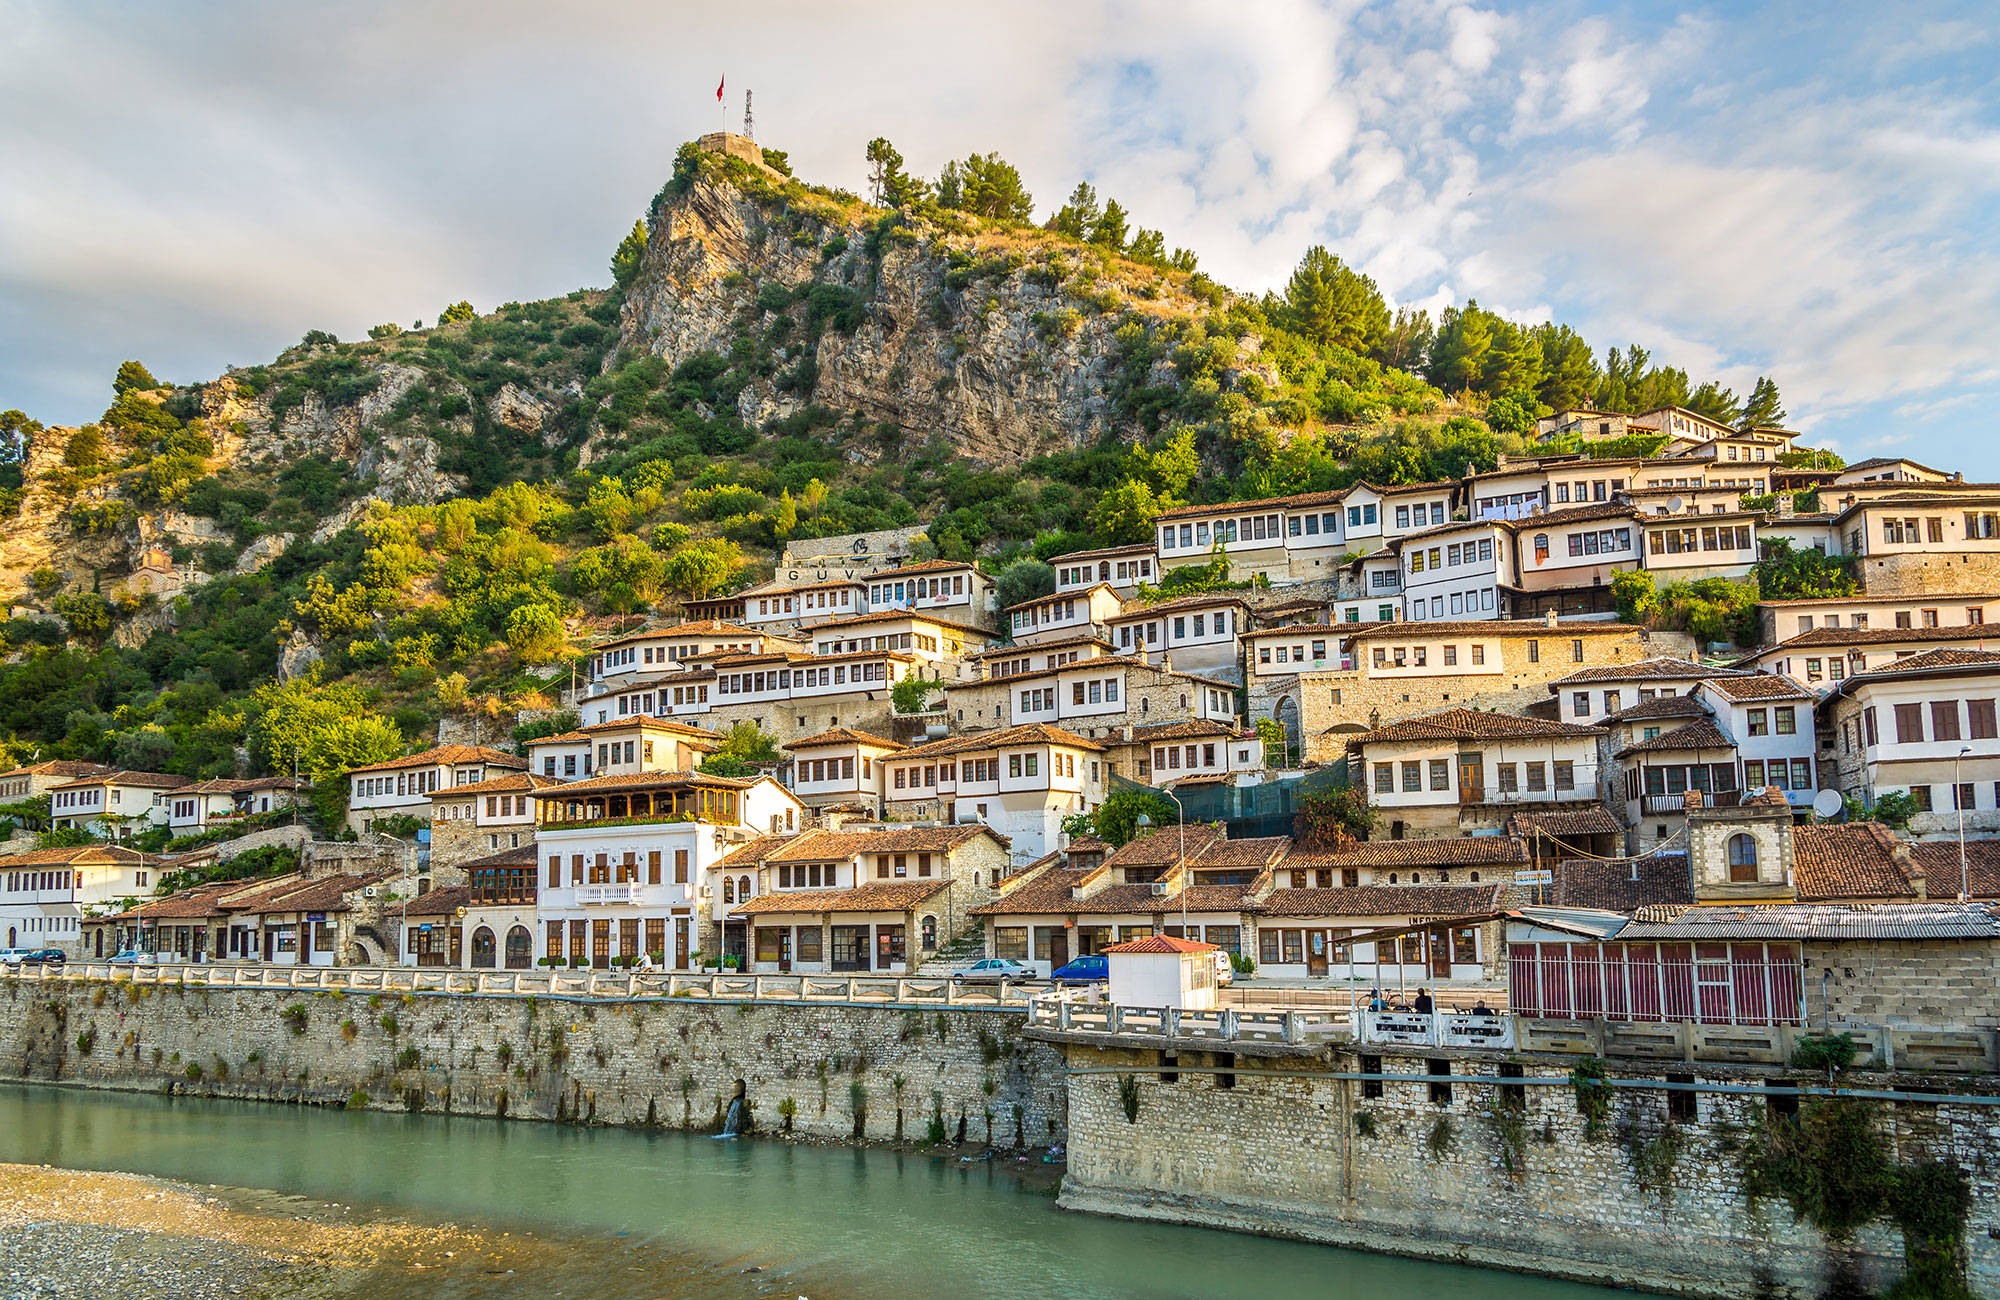 Kuststad in Albanië | Reizen in Europa | KILROY